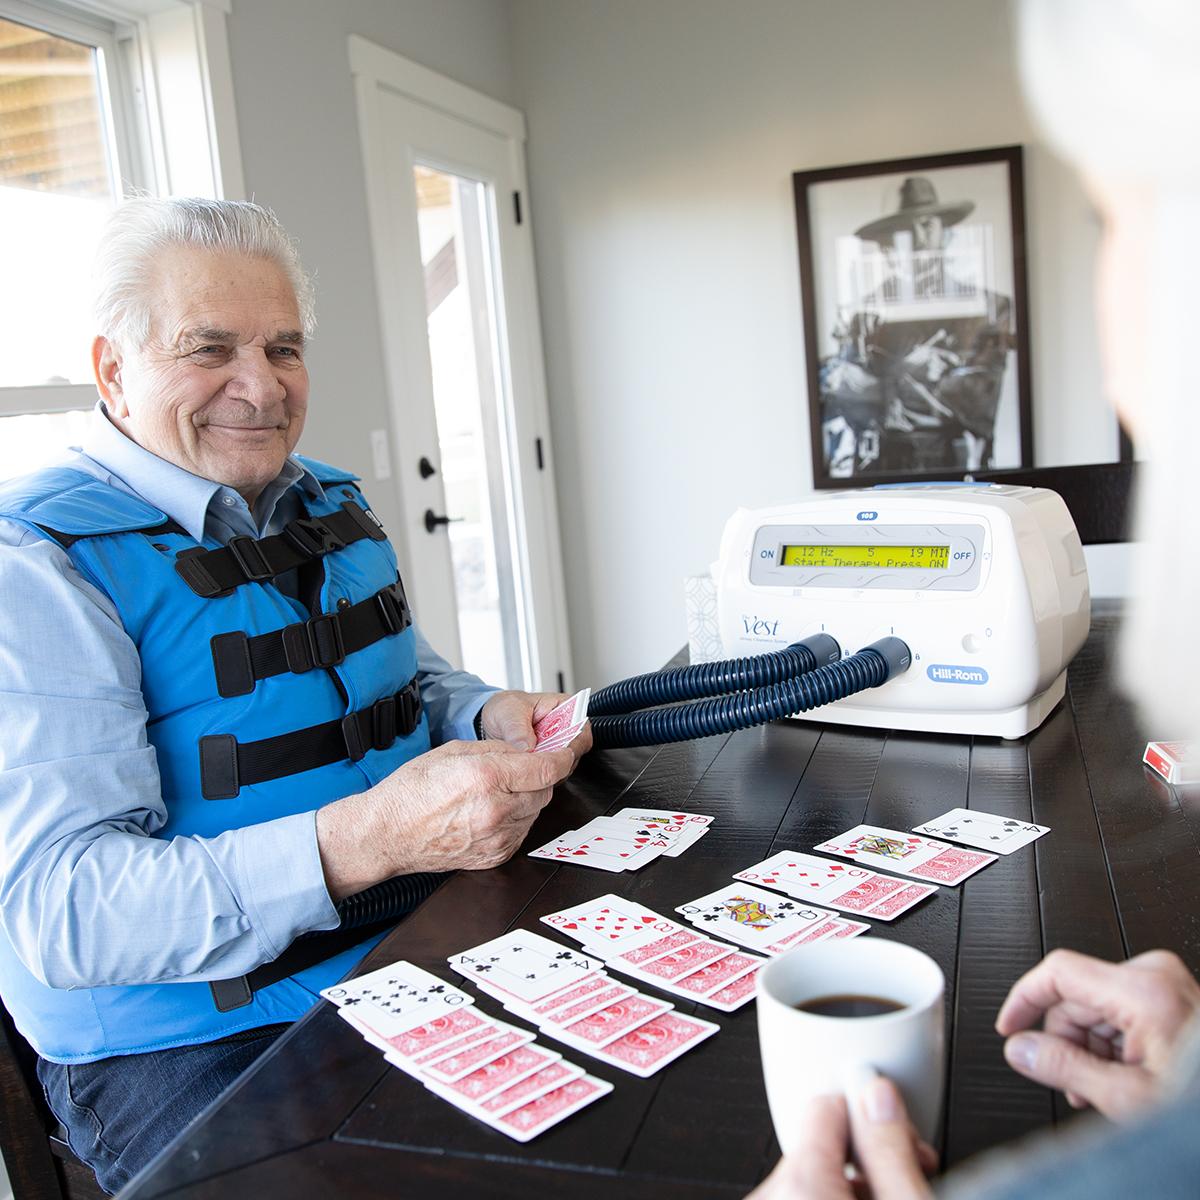 Starszy mężczyzna używa systemu The Vest podczas gry w pasjansa przy stole w jadalni.